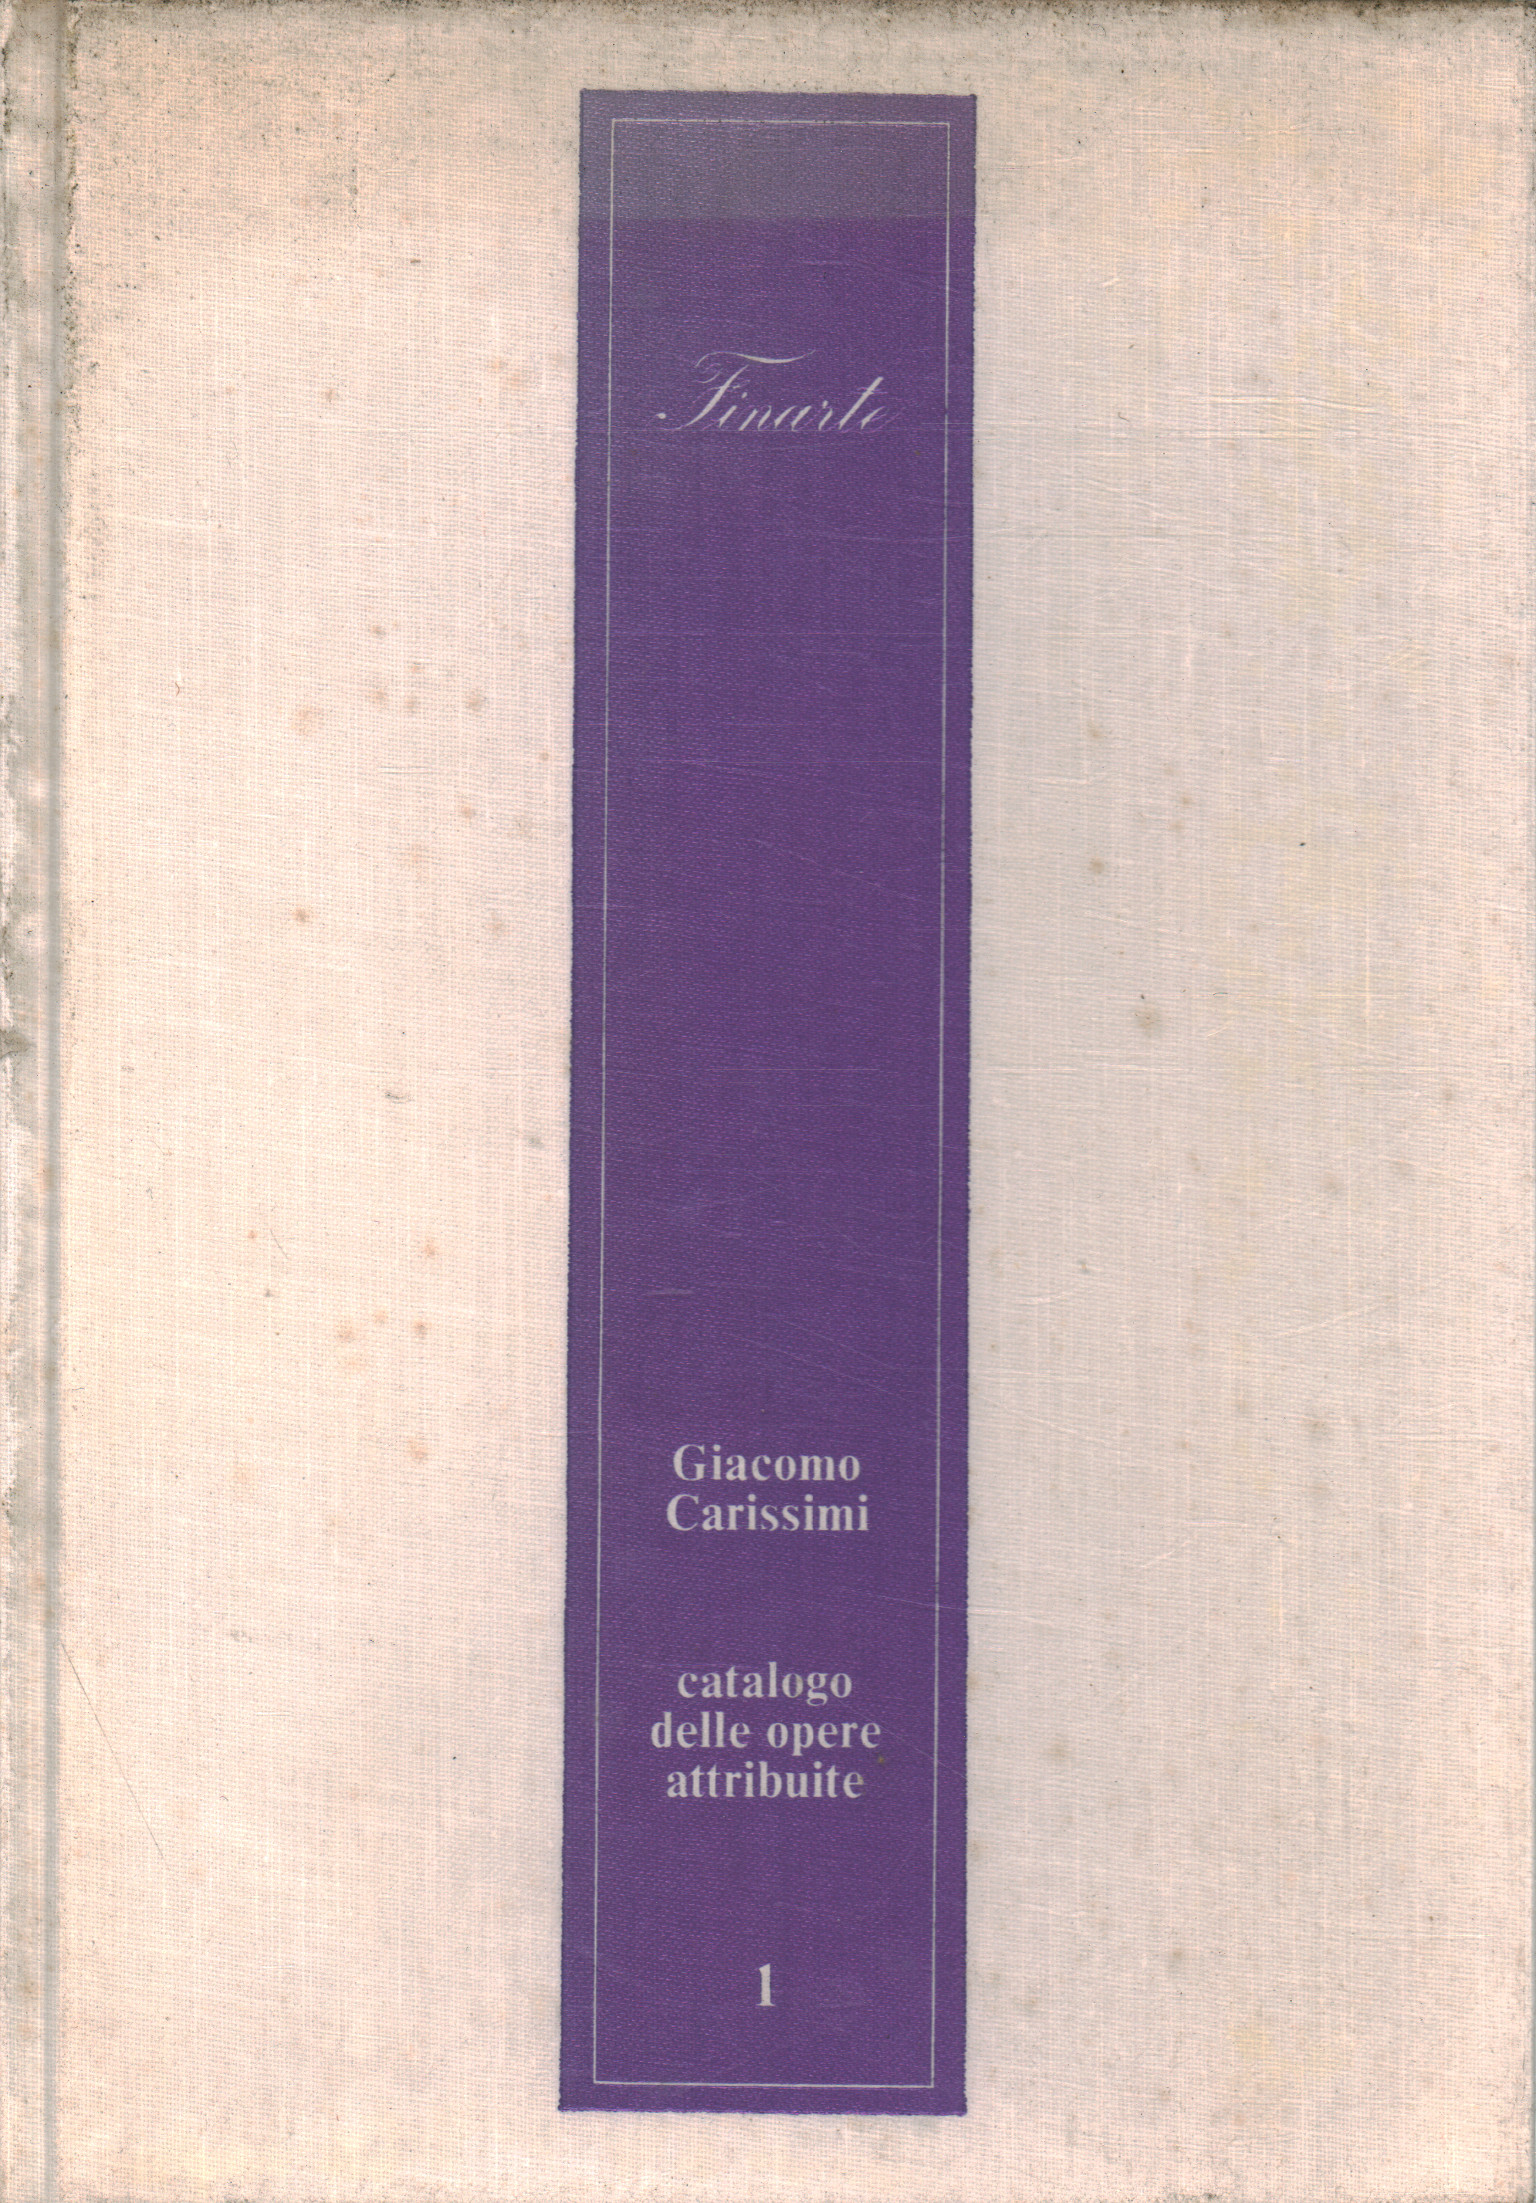 Katalog der Werke zugeschrieben 1, Giacomo Carissimi